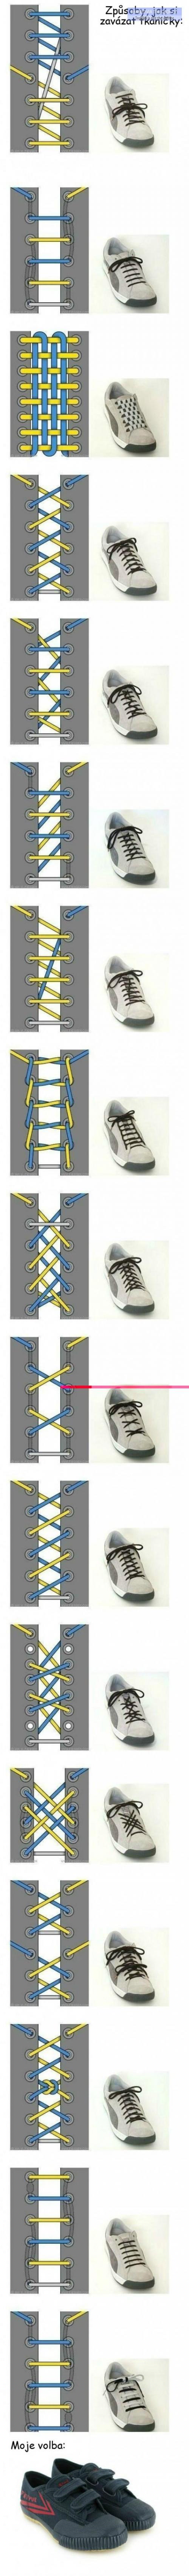  Způsoby, jak zavázat tkaničky 